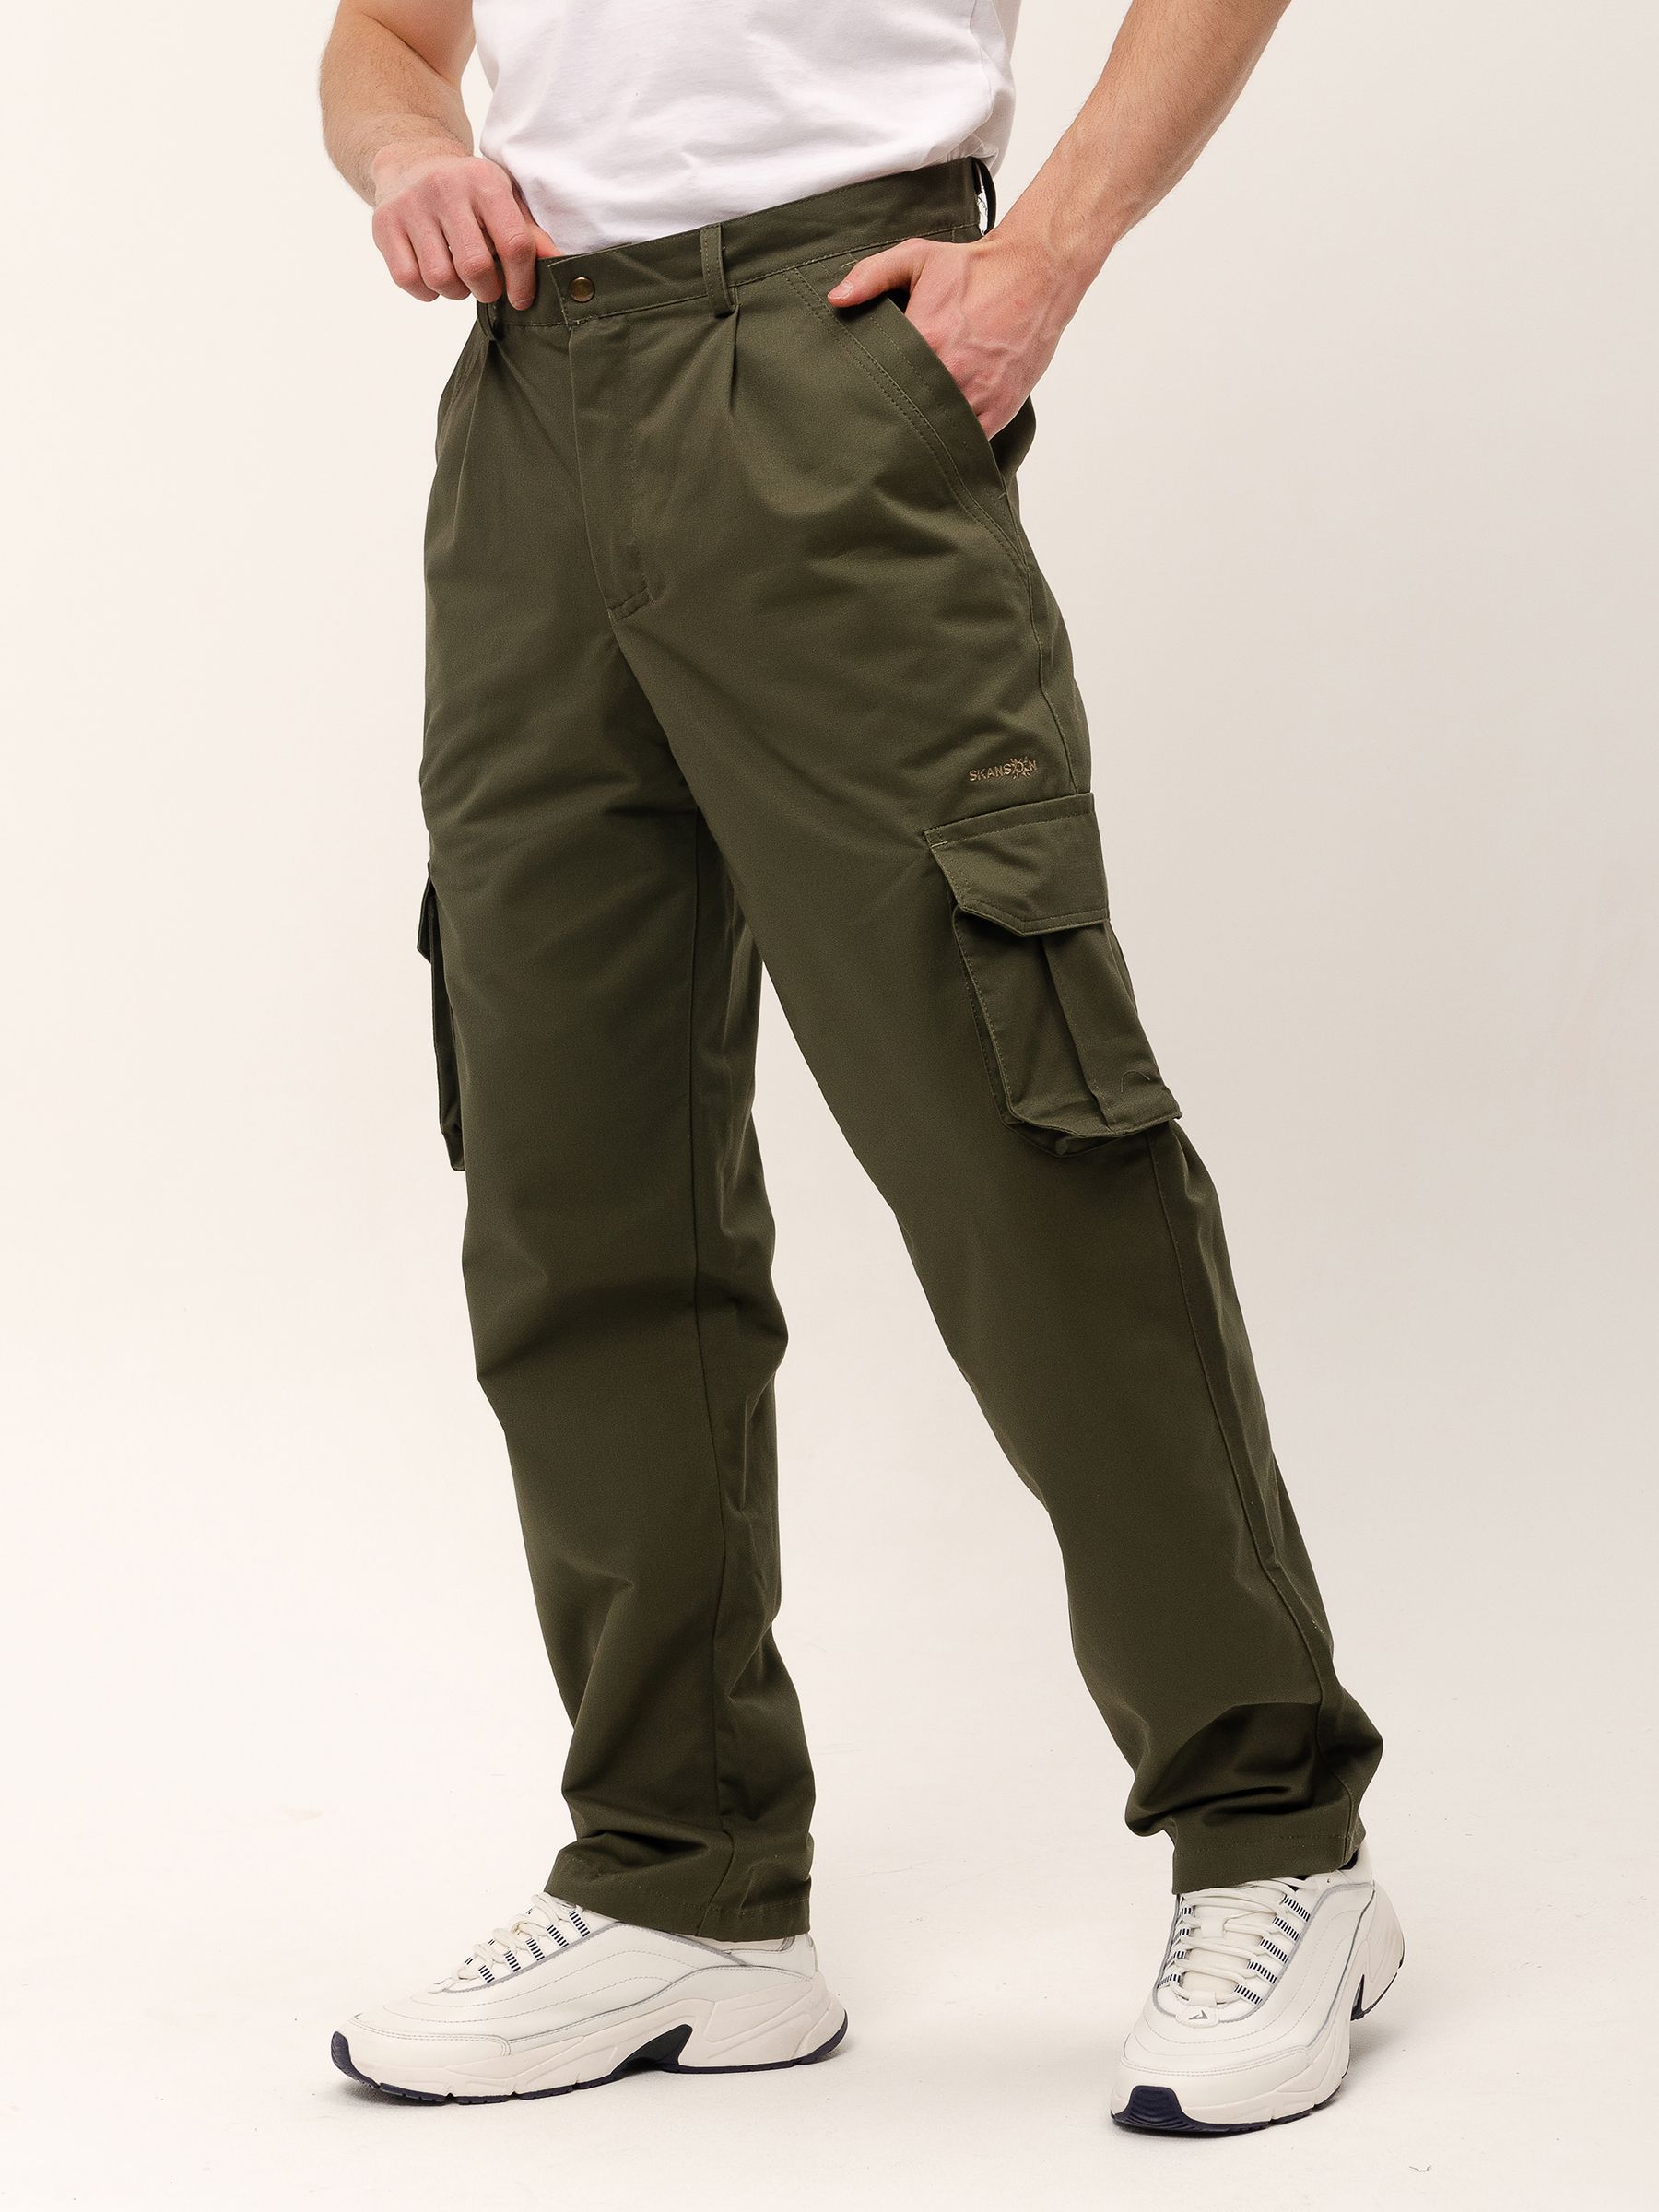 Демисезонные мужские брюки Килиманджаро, цвет хаки из мембранной ткани